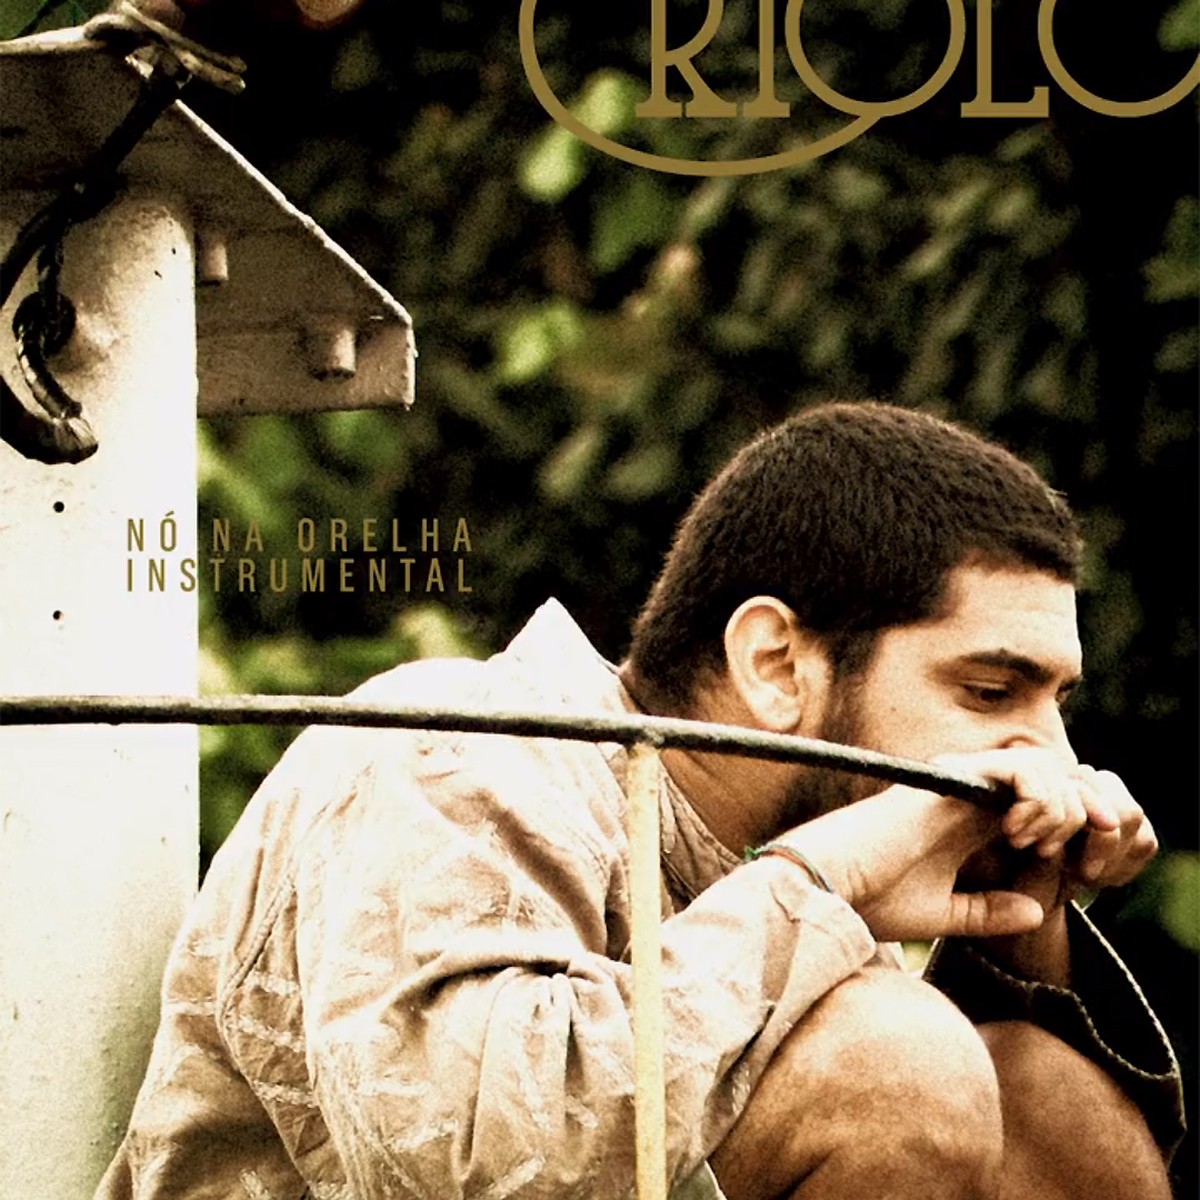 Criolo recicla ‘Nó na orelha’, álbum que o projetou há dez anos, sem as vozes e com cores na capa | Blog do Mauro Ferreira